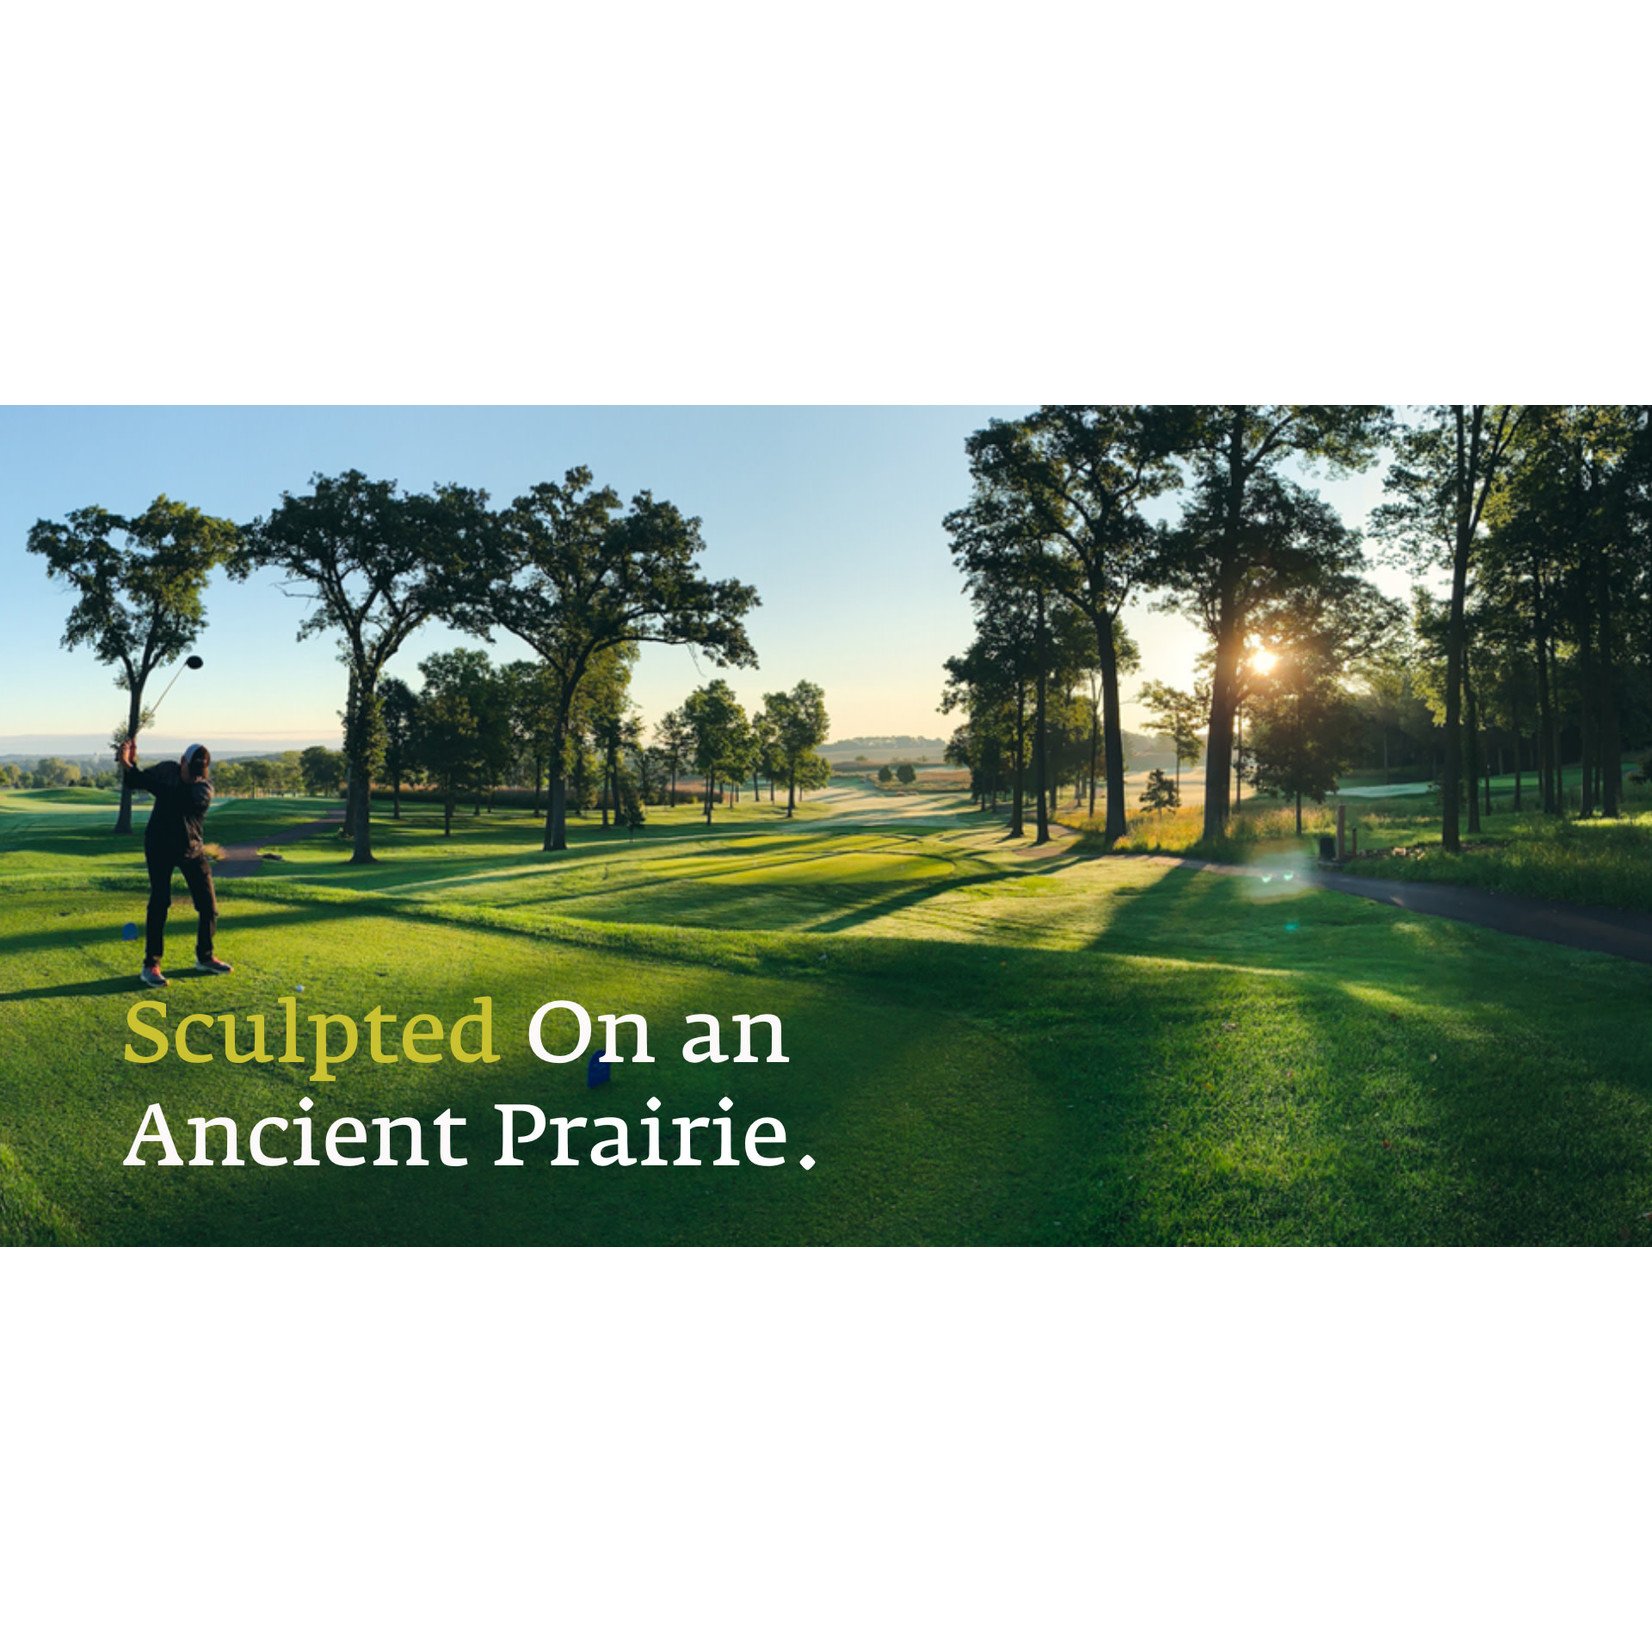 Prairie View Golf Club-Byron Prairie View Golf Club-Byron - round of golf for 2 w/cart